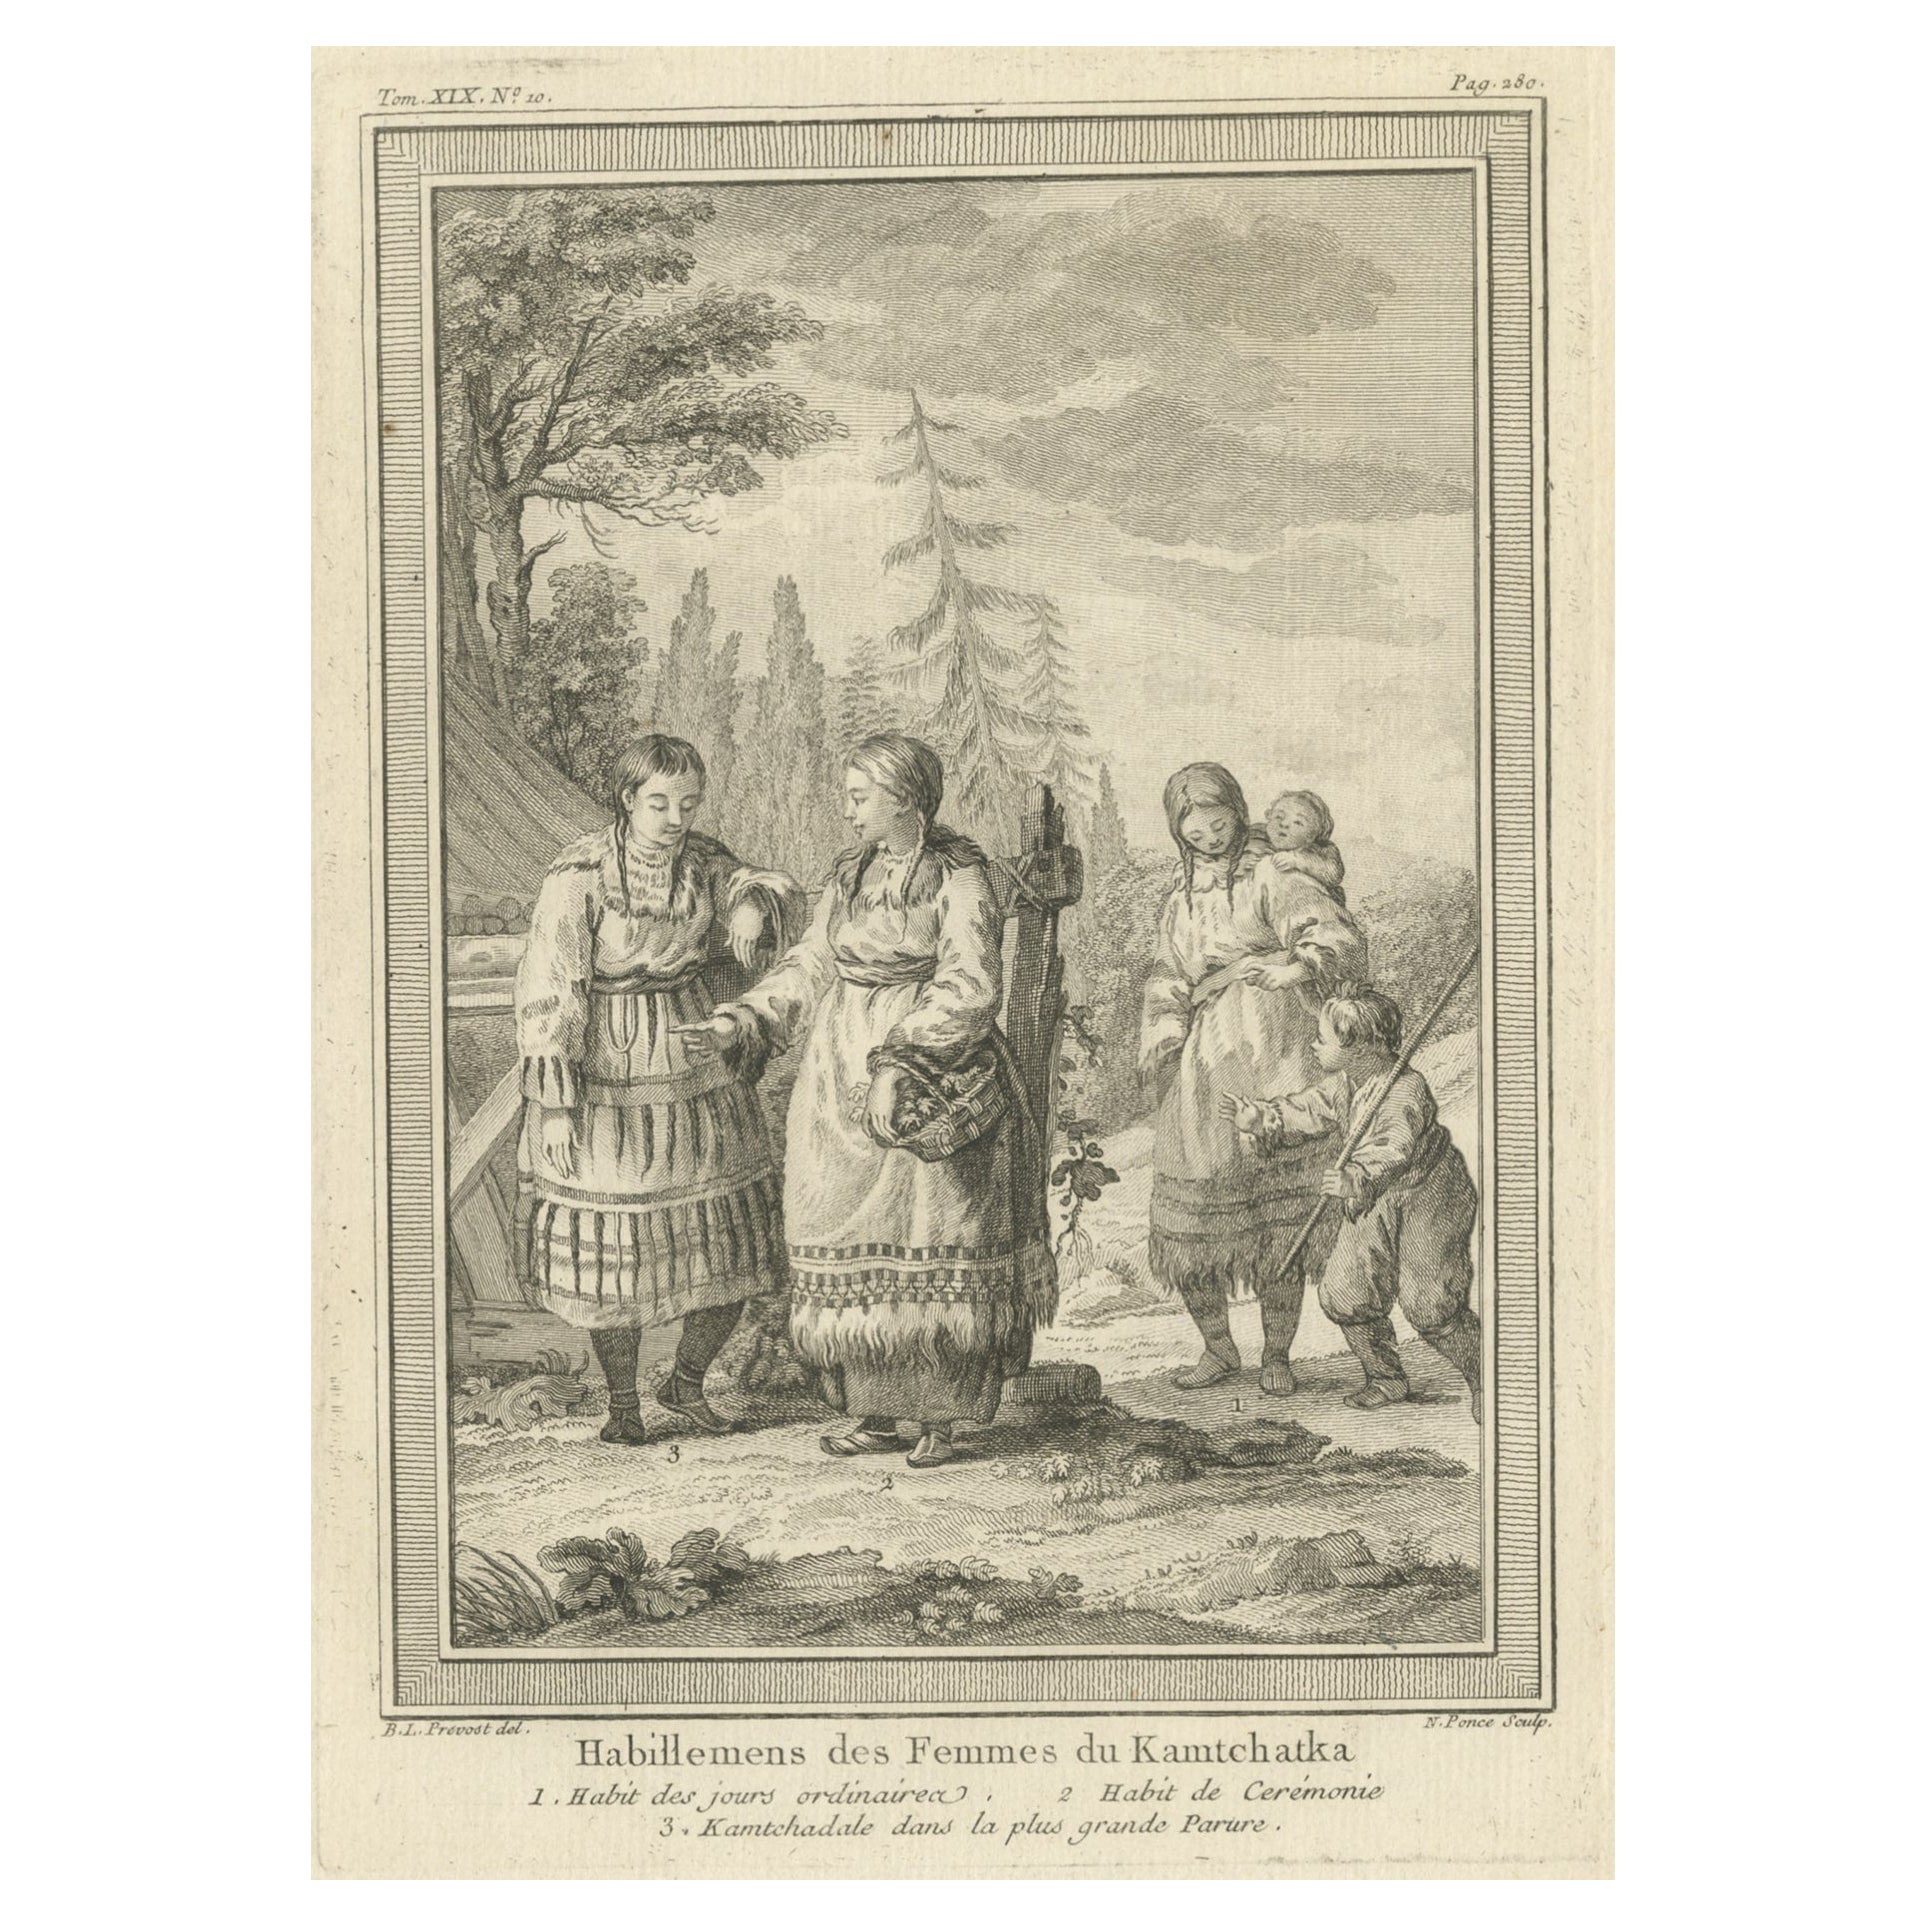 Kupferstich von kaukasischen Frauen aus Kamchatka, Russland, 1770